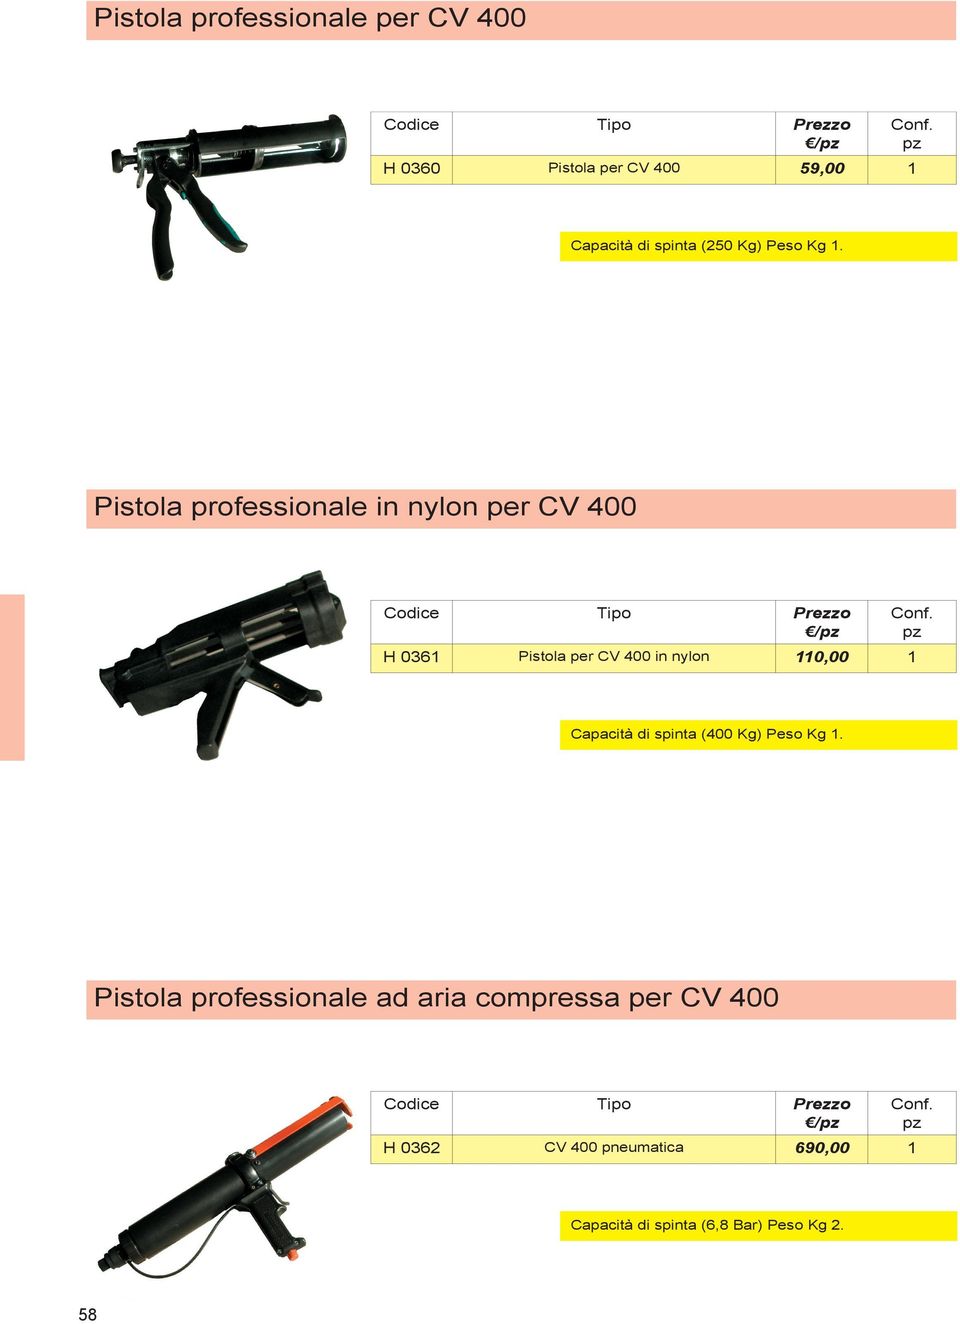 Pistola professionale in nylon per CV 400 Tipo H 0361 Pistola per CV 400 in nylon 110,00 1